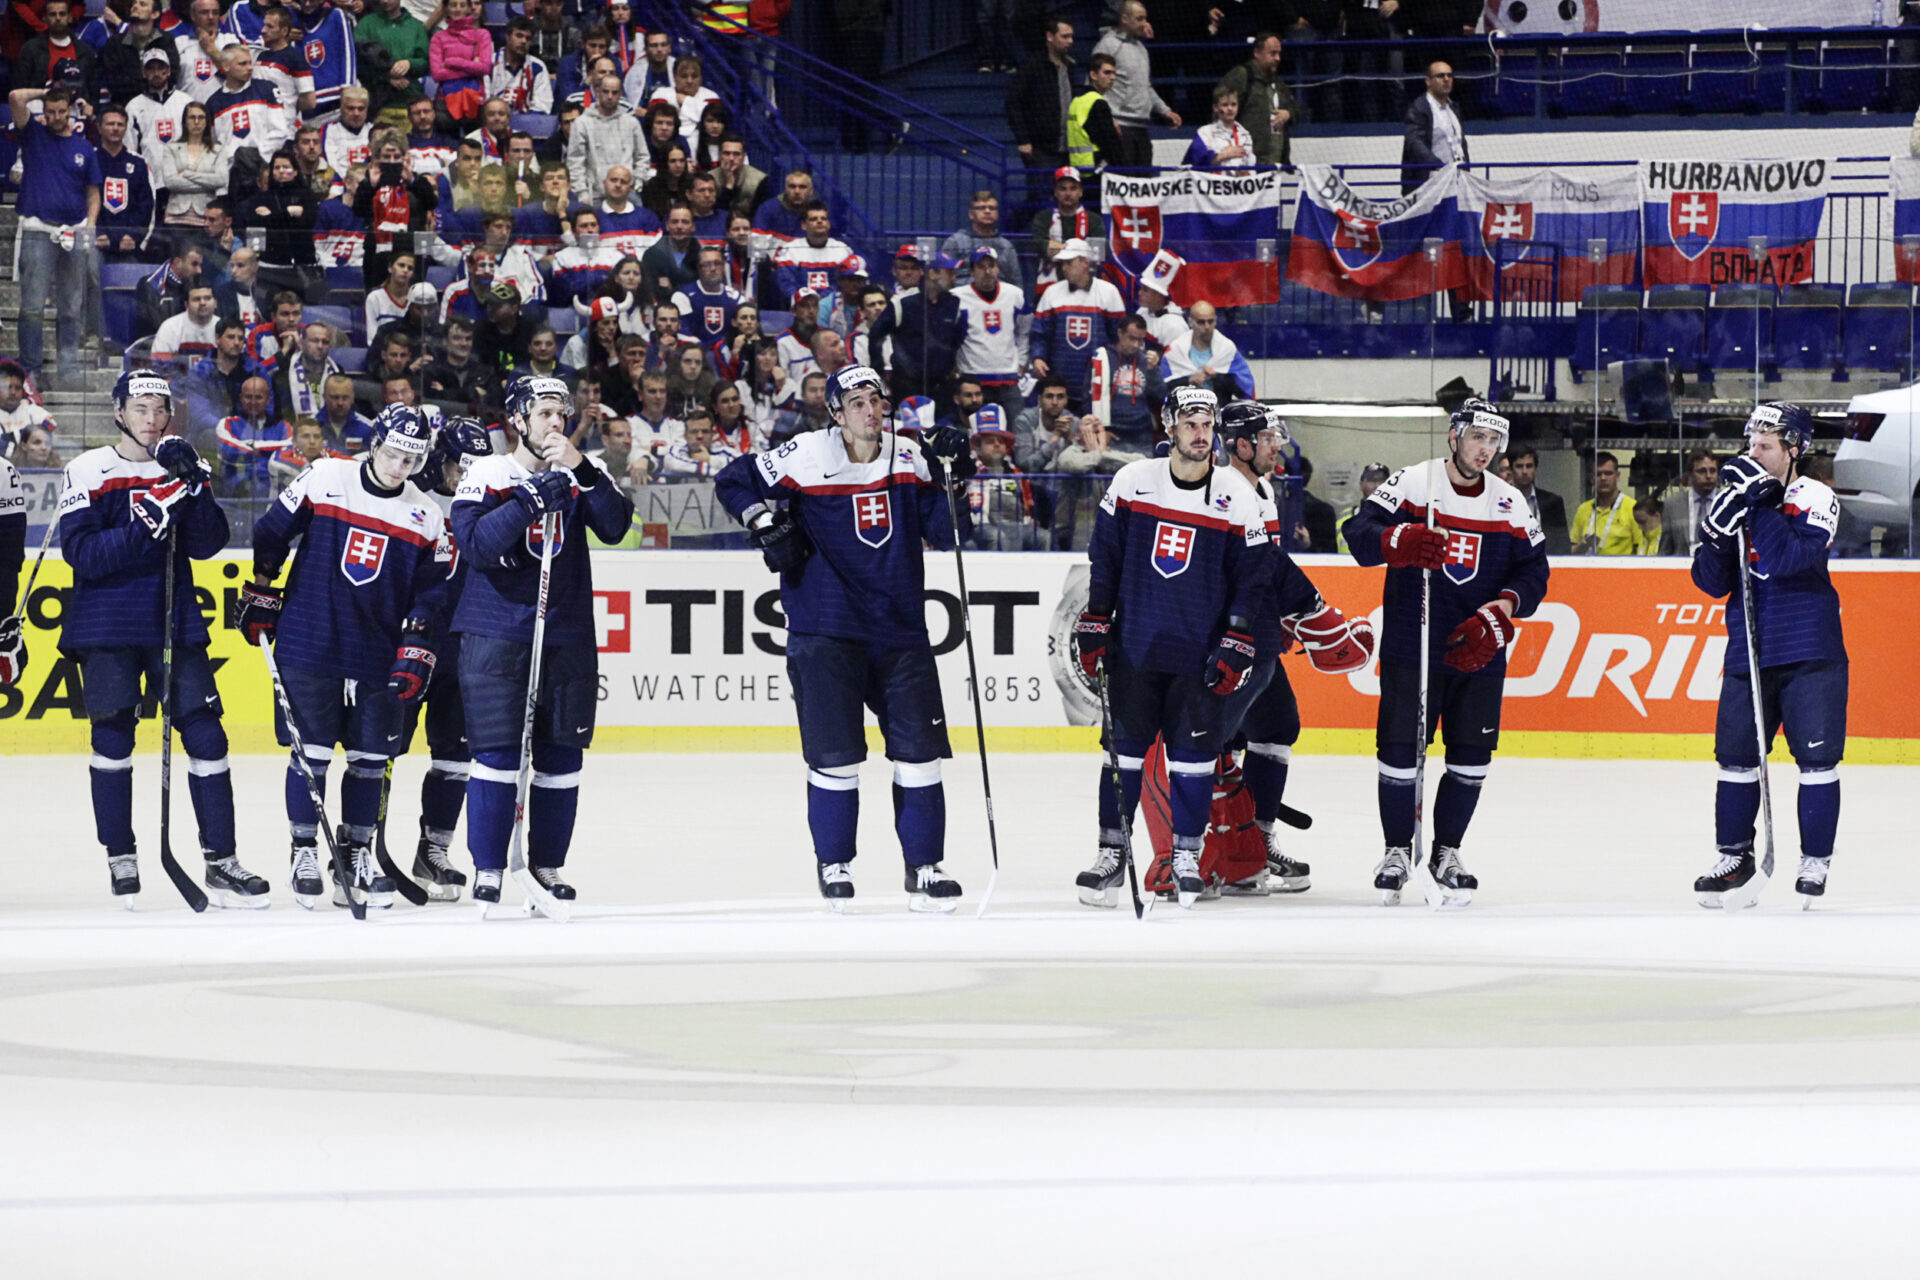 Predstavia sa slovenskí hráči pôsobiaci v ruskej KHL na MS 2023? SZĽH má jasné stanovisko